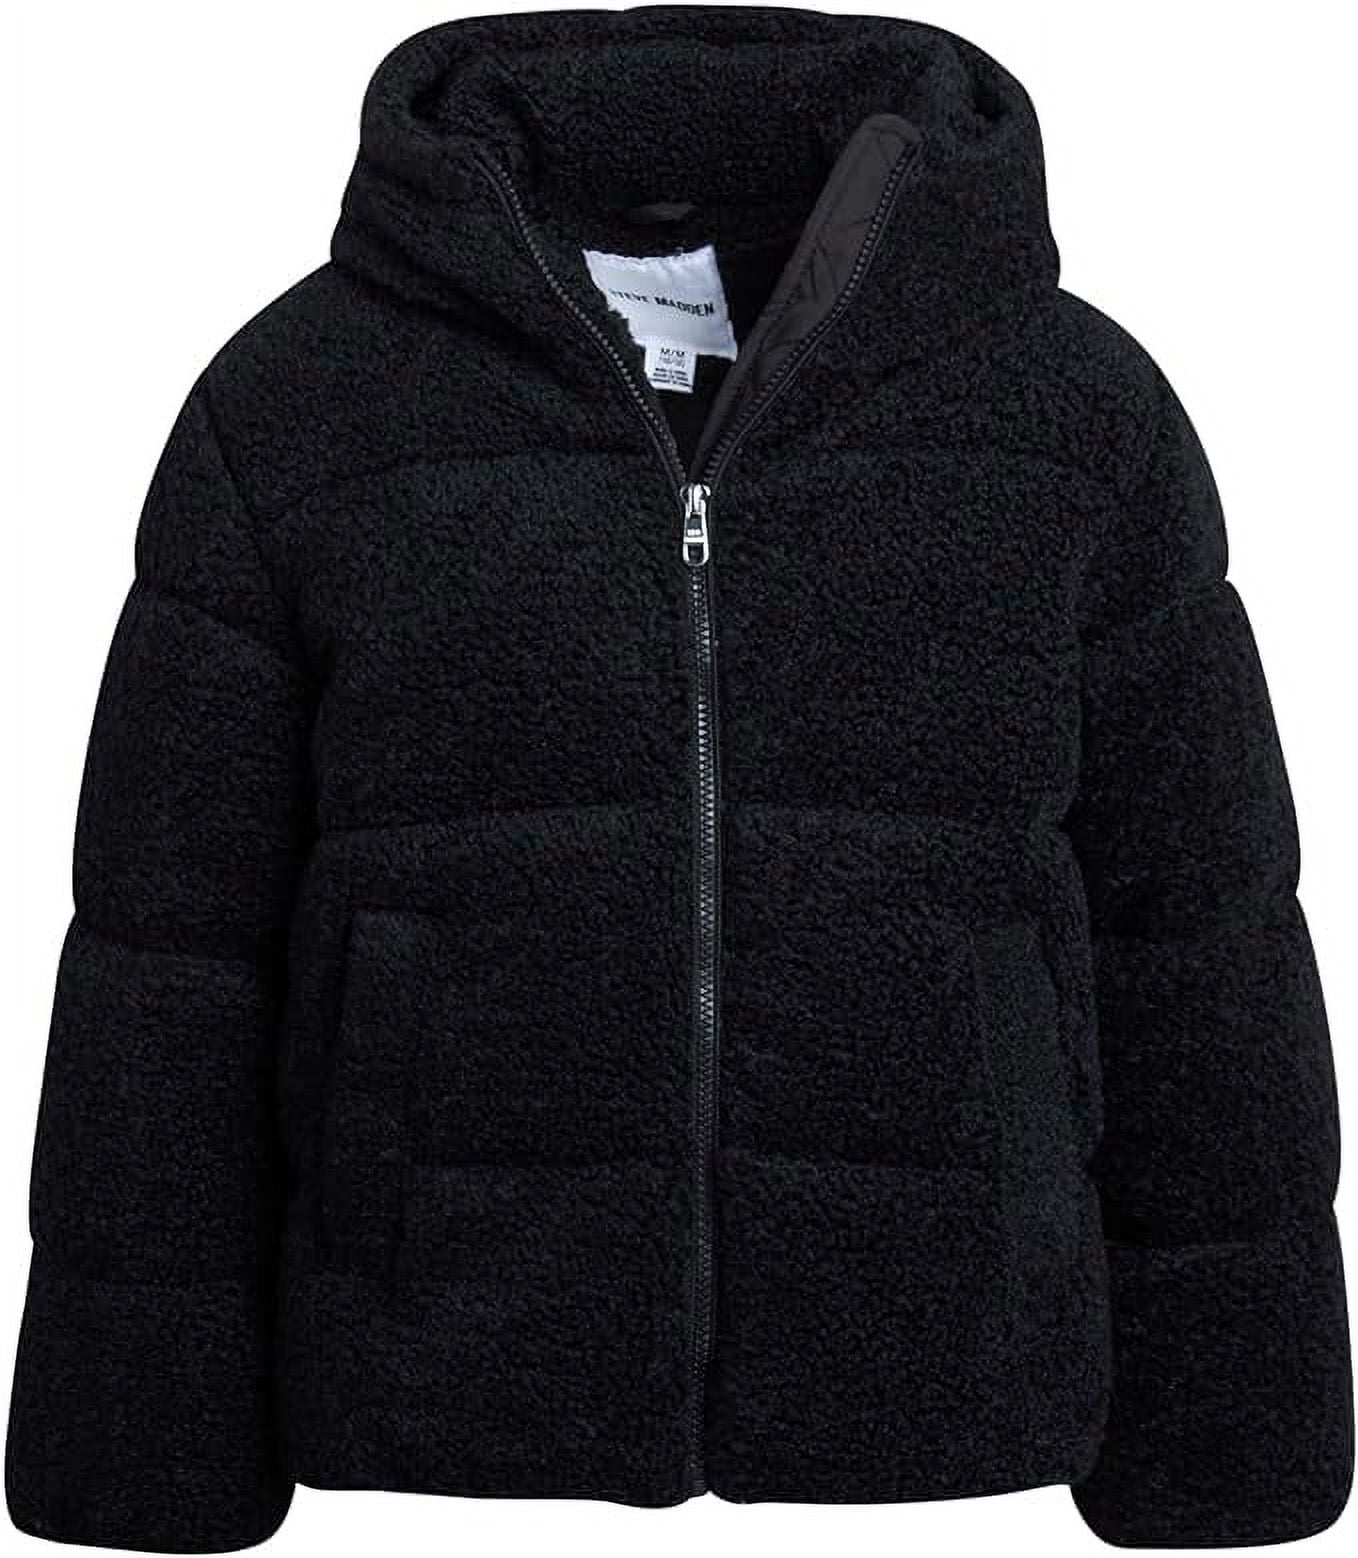 Steve Madden Girls’ Winter Jacket – Sherpa Fleece Quilted Puffer Coat ...